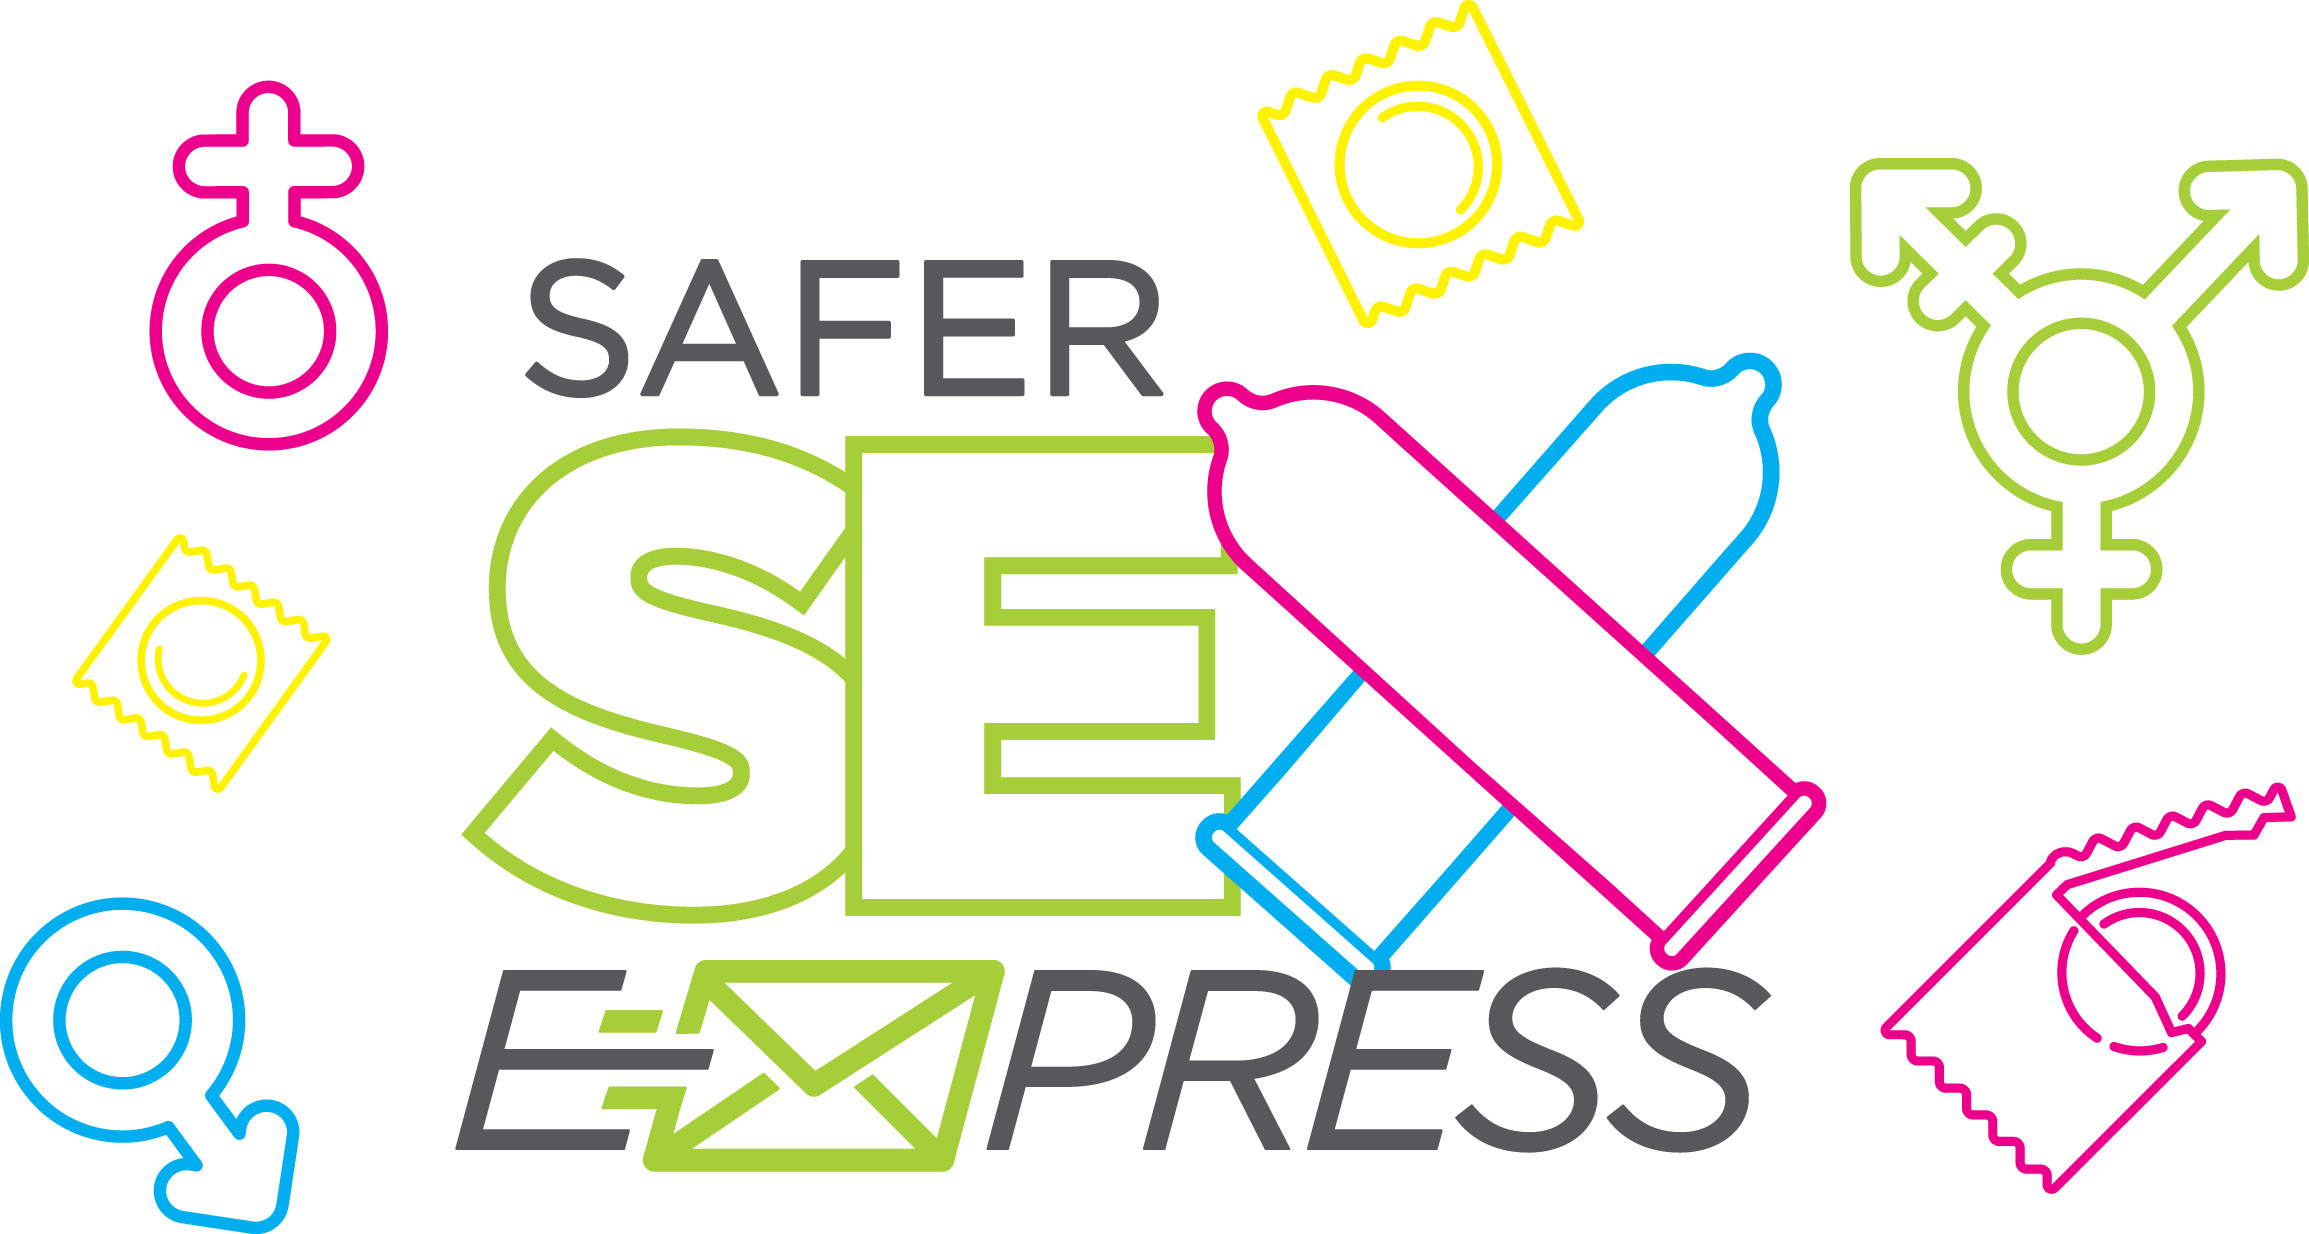 Safer Sex Express Image